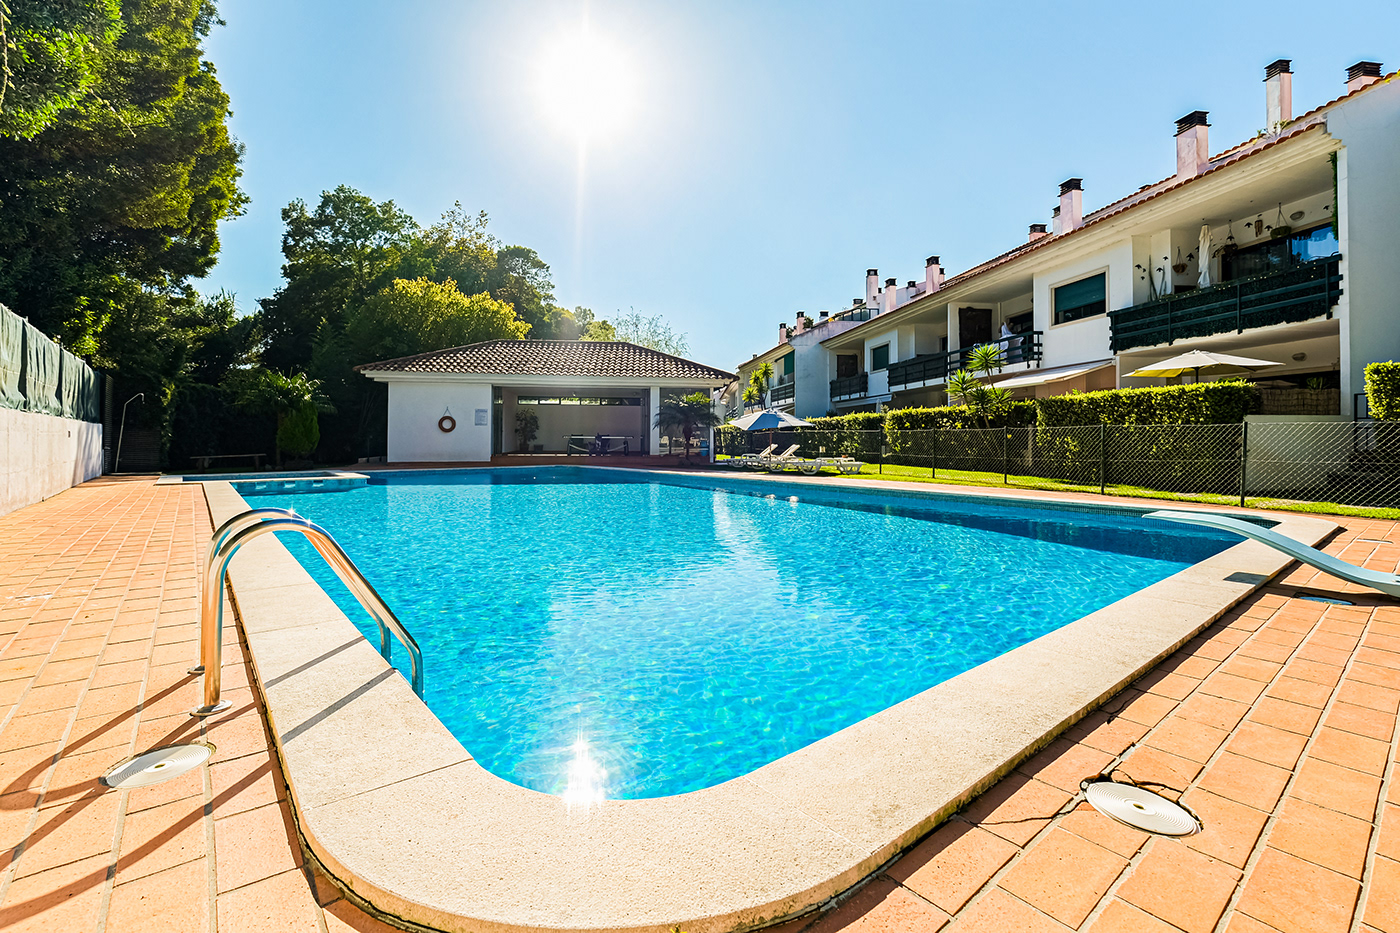 real estate imobiliária imobiliário fotografia de imóveis fotografia de imobiliário jardim piscinas CASAS exteriores